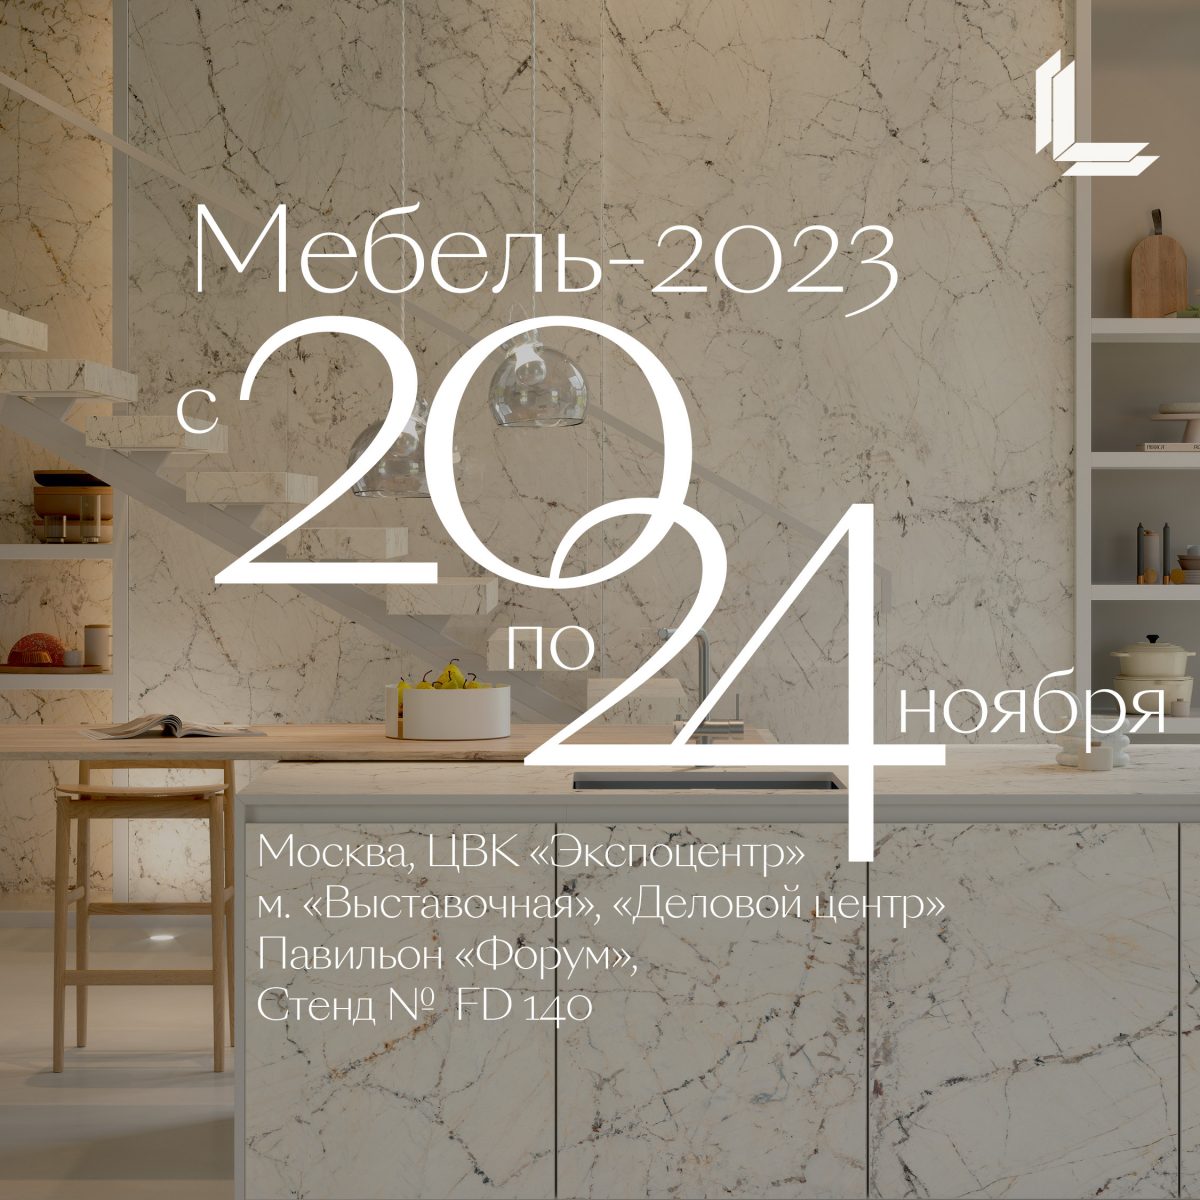 Laminam Rus примет участие в выставке «Мебель-2023»